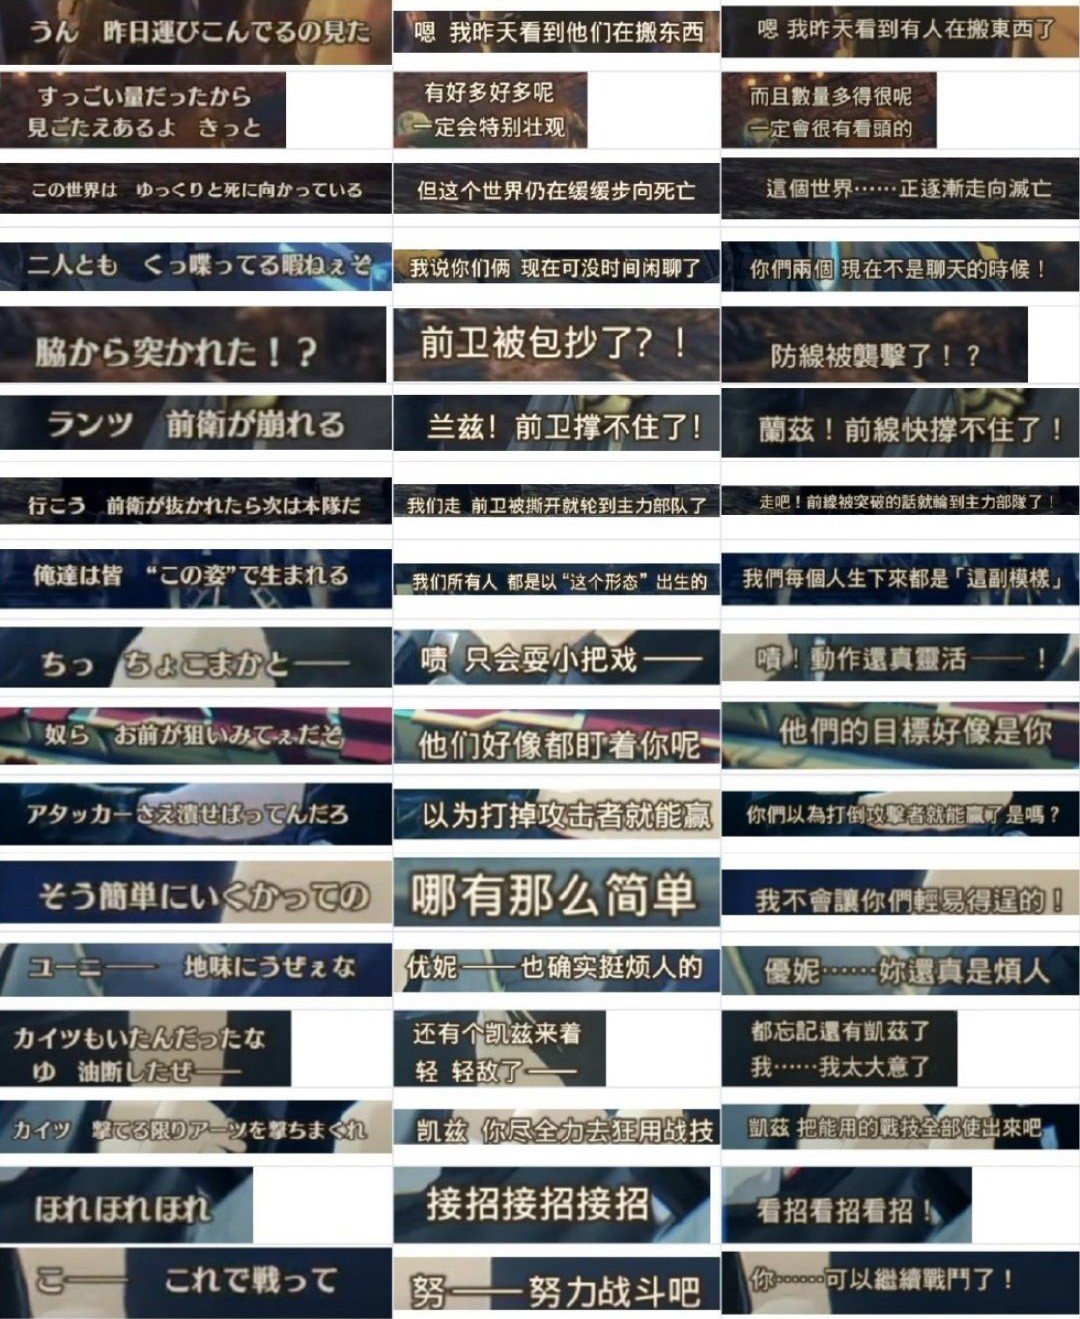 《异度神剑3》简中翻译在网上引发争议 玩家绷不住了-第0张